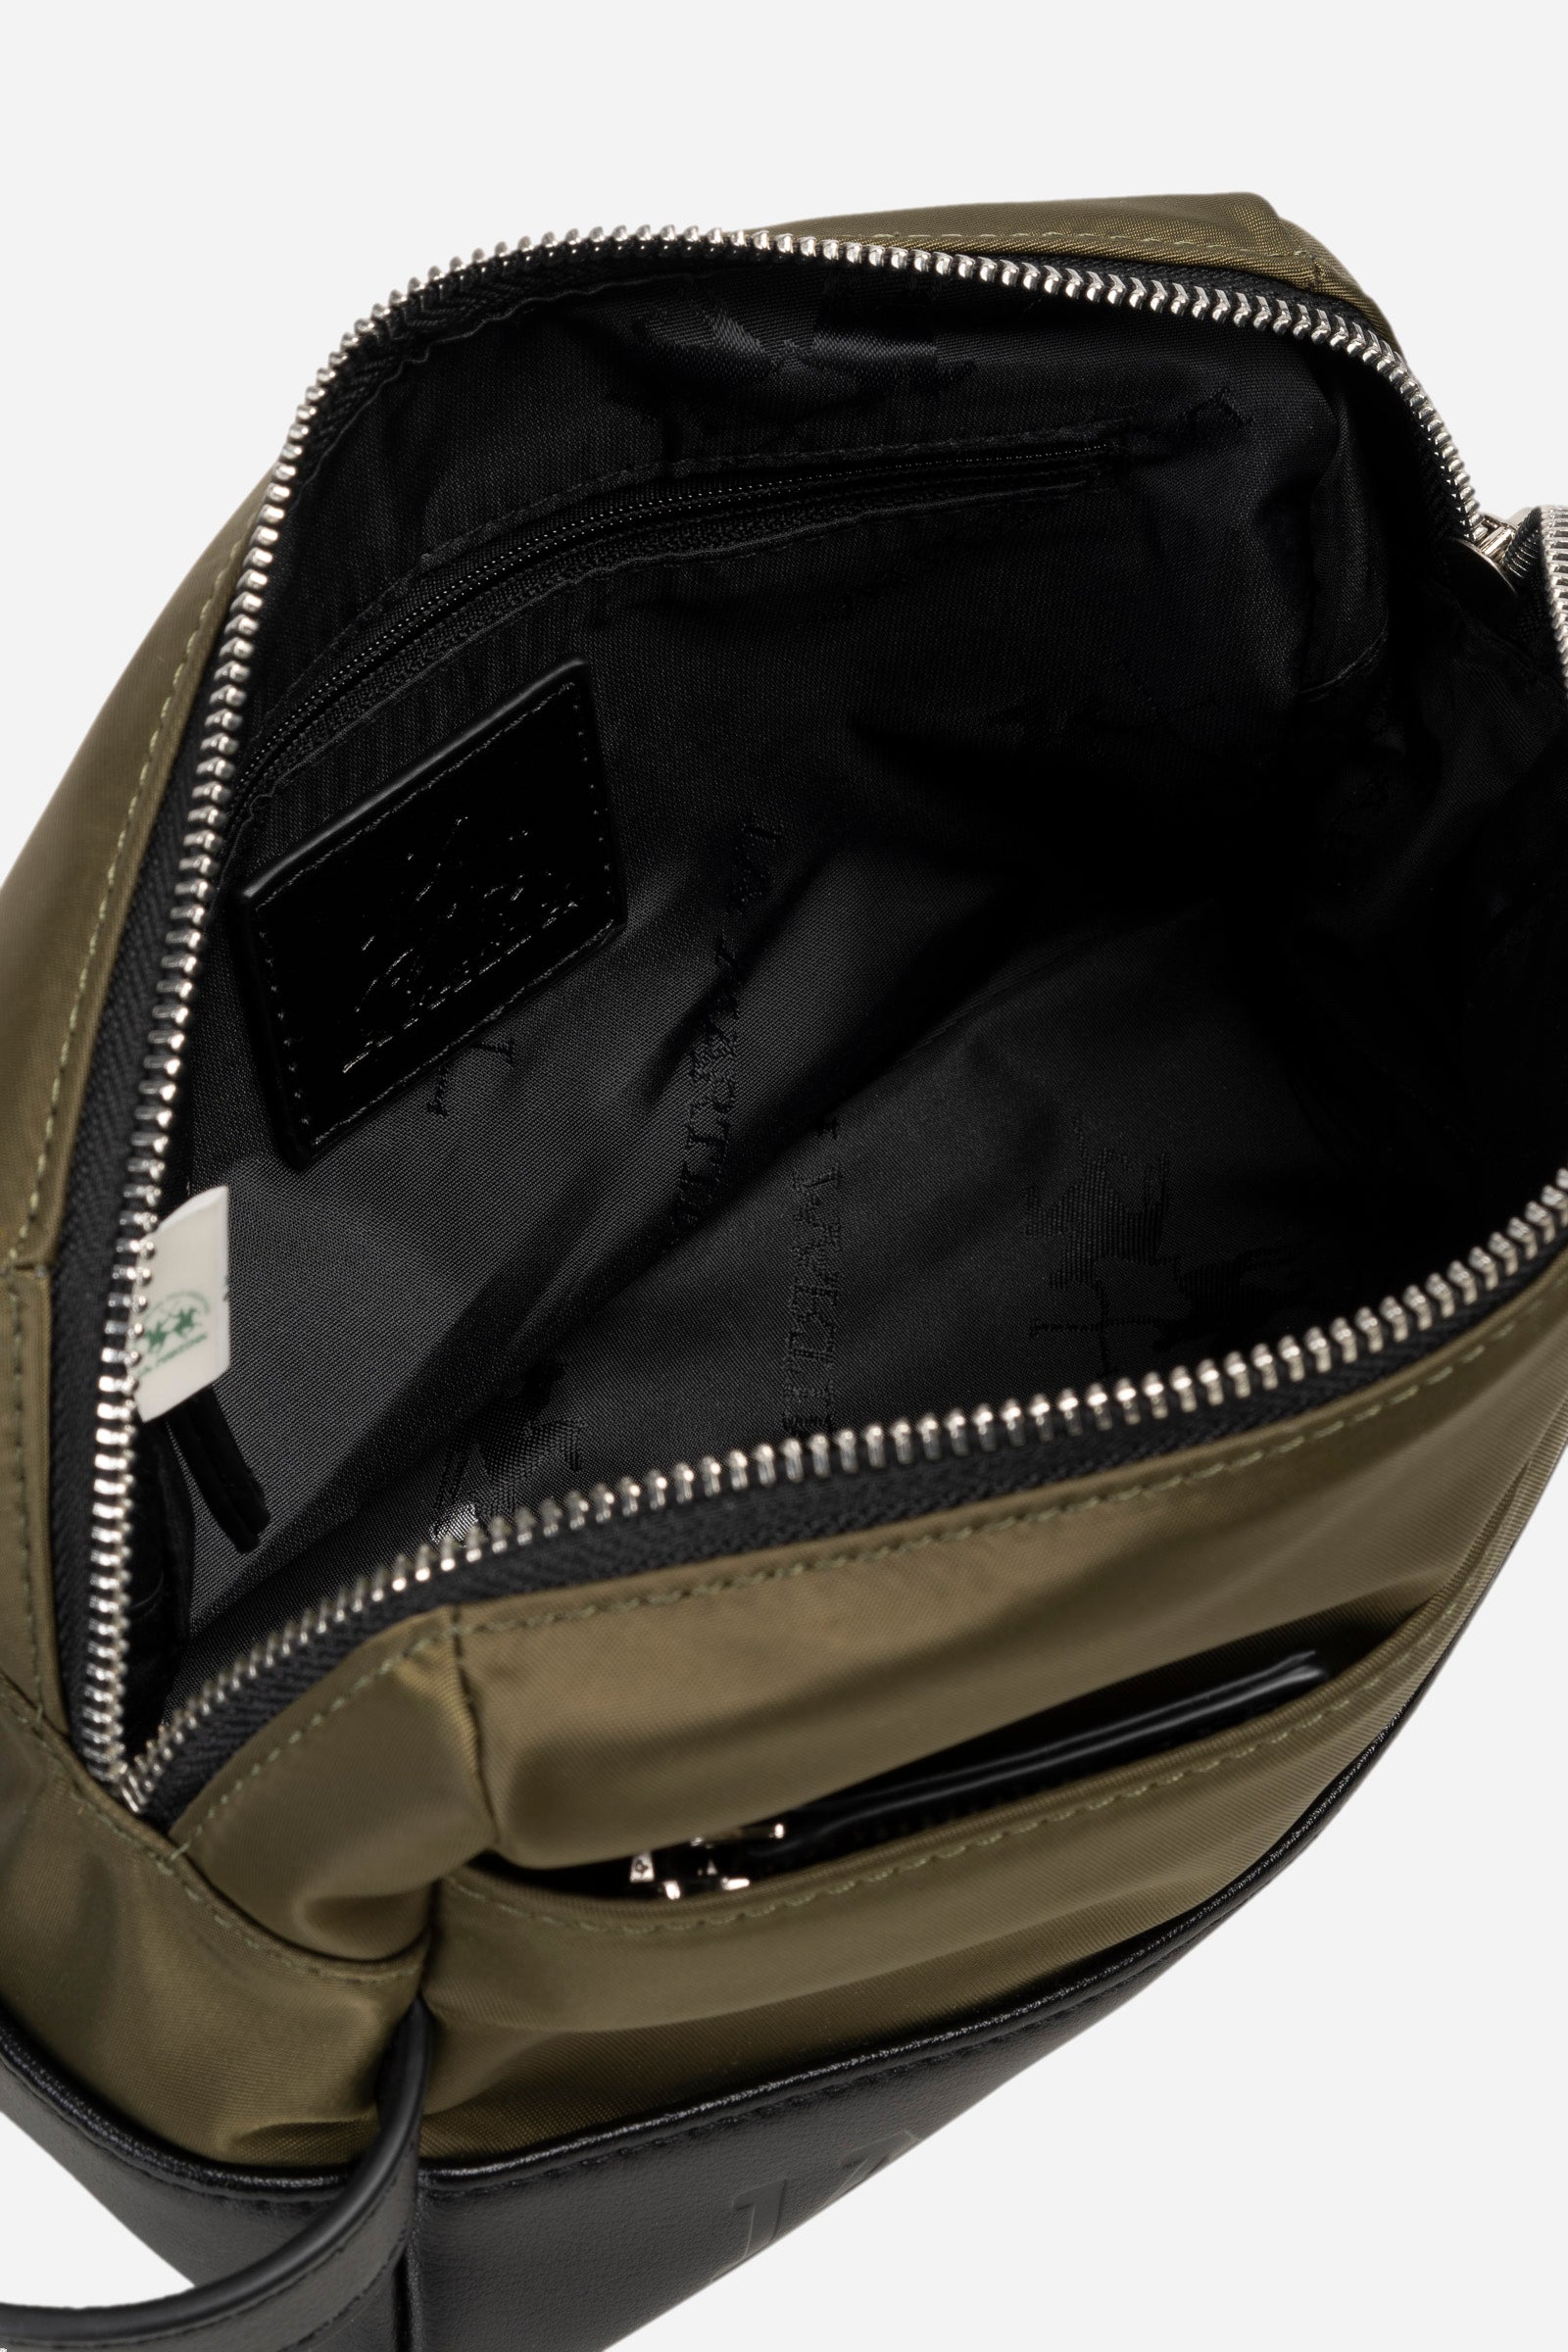 Herren-Clutch-Tasche aus Nylon – Bruno